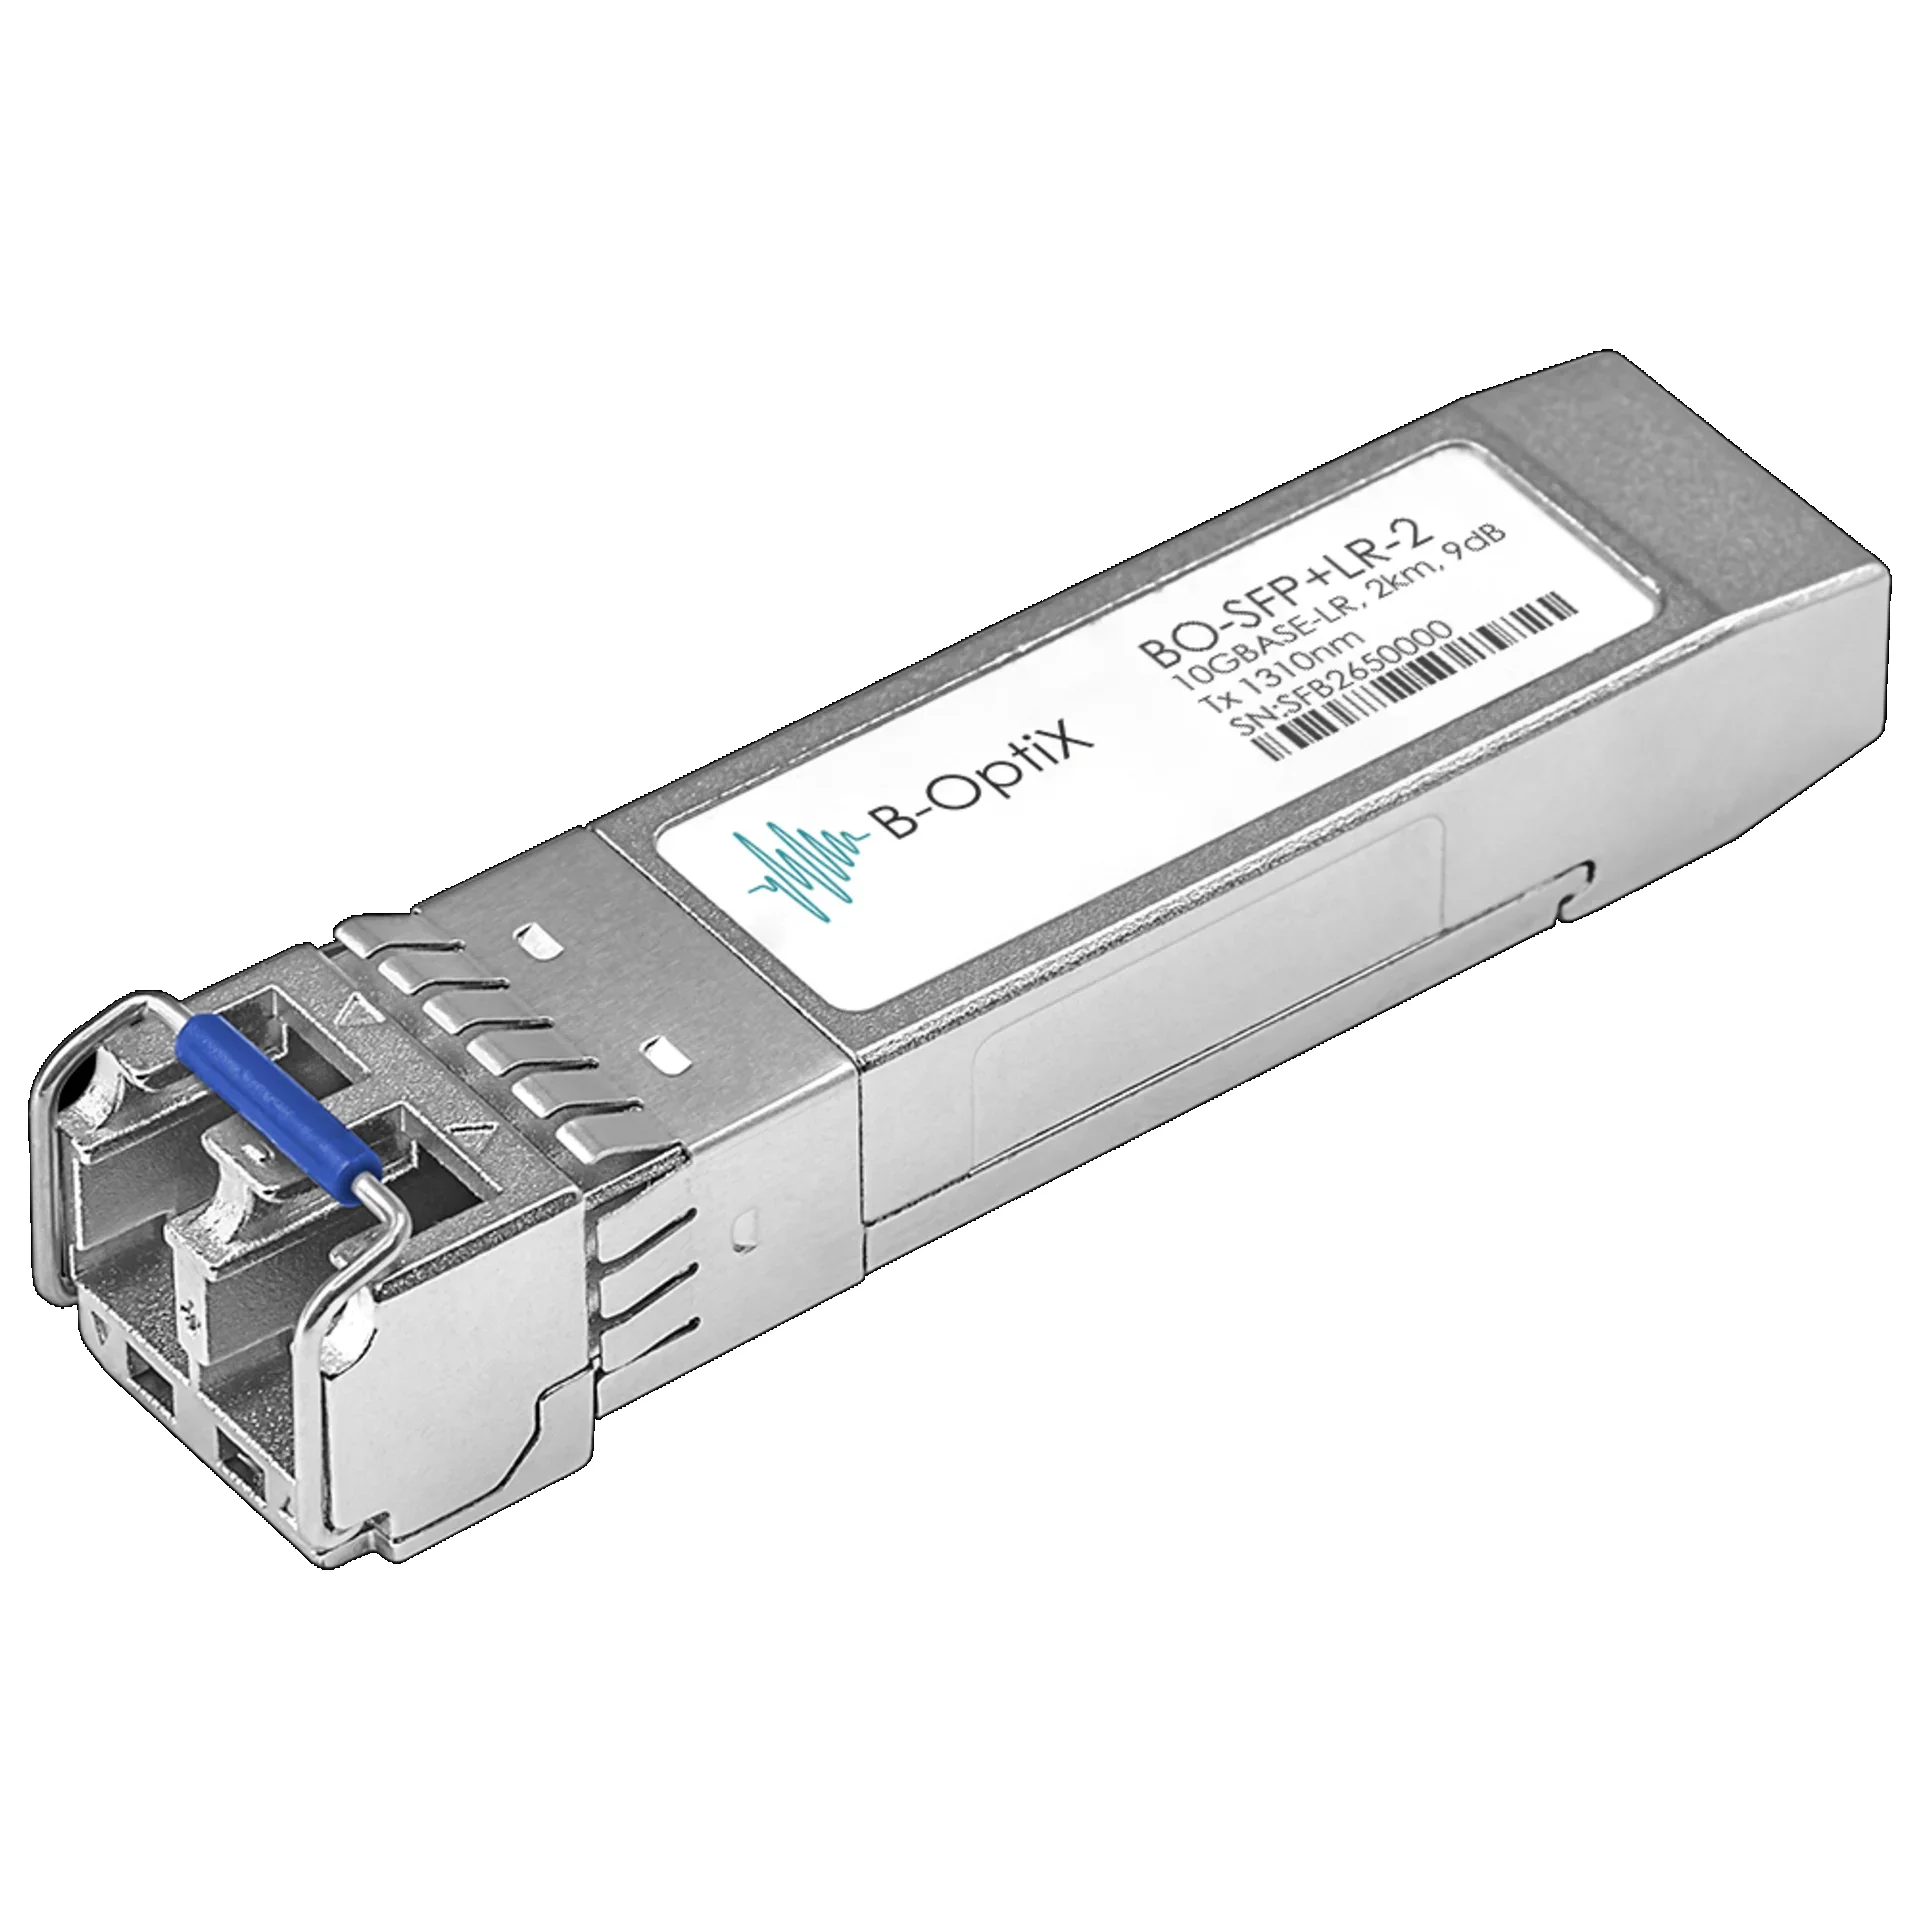 B-OptiX BO-SFP+LR-10 - Двухволоконный модуль, B-OptiX SFP+ 10GBASE-LR/LW, разъем LC duplex, рабочая длина волны 1310нм, дальность до 10км (11dB). купить в Казани 	Двухволоконный оптический модуль с форм-фактором SFP+ для 10G Ethernet, соответствует стандарту 10G